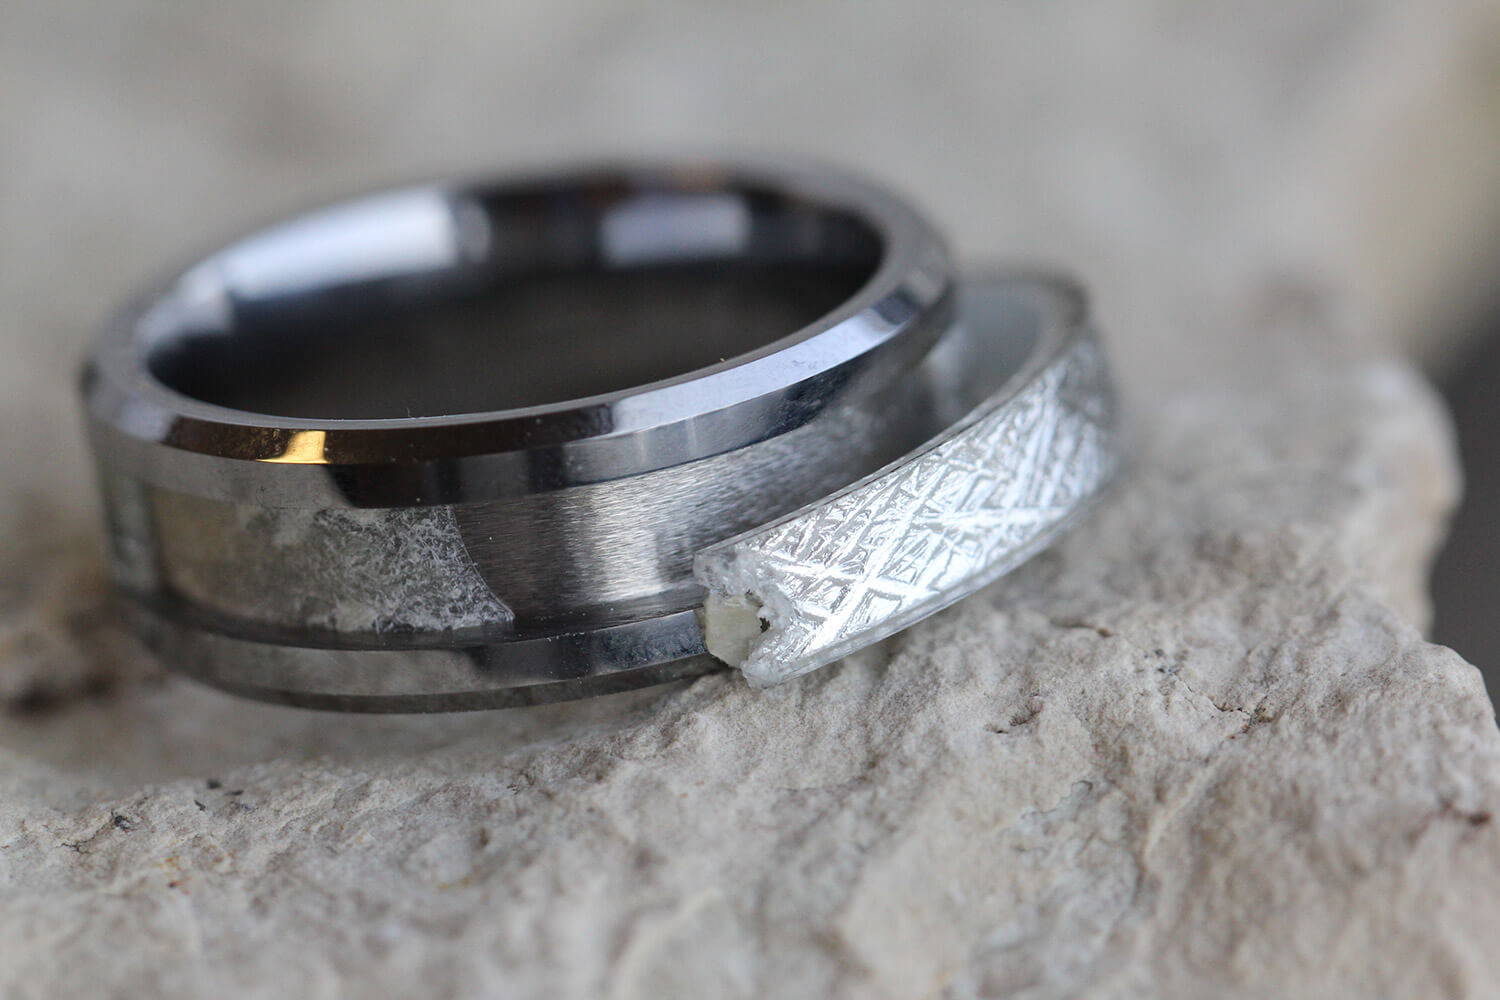 Meteorite Wedding Ring Set